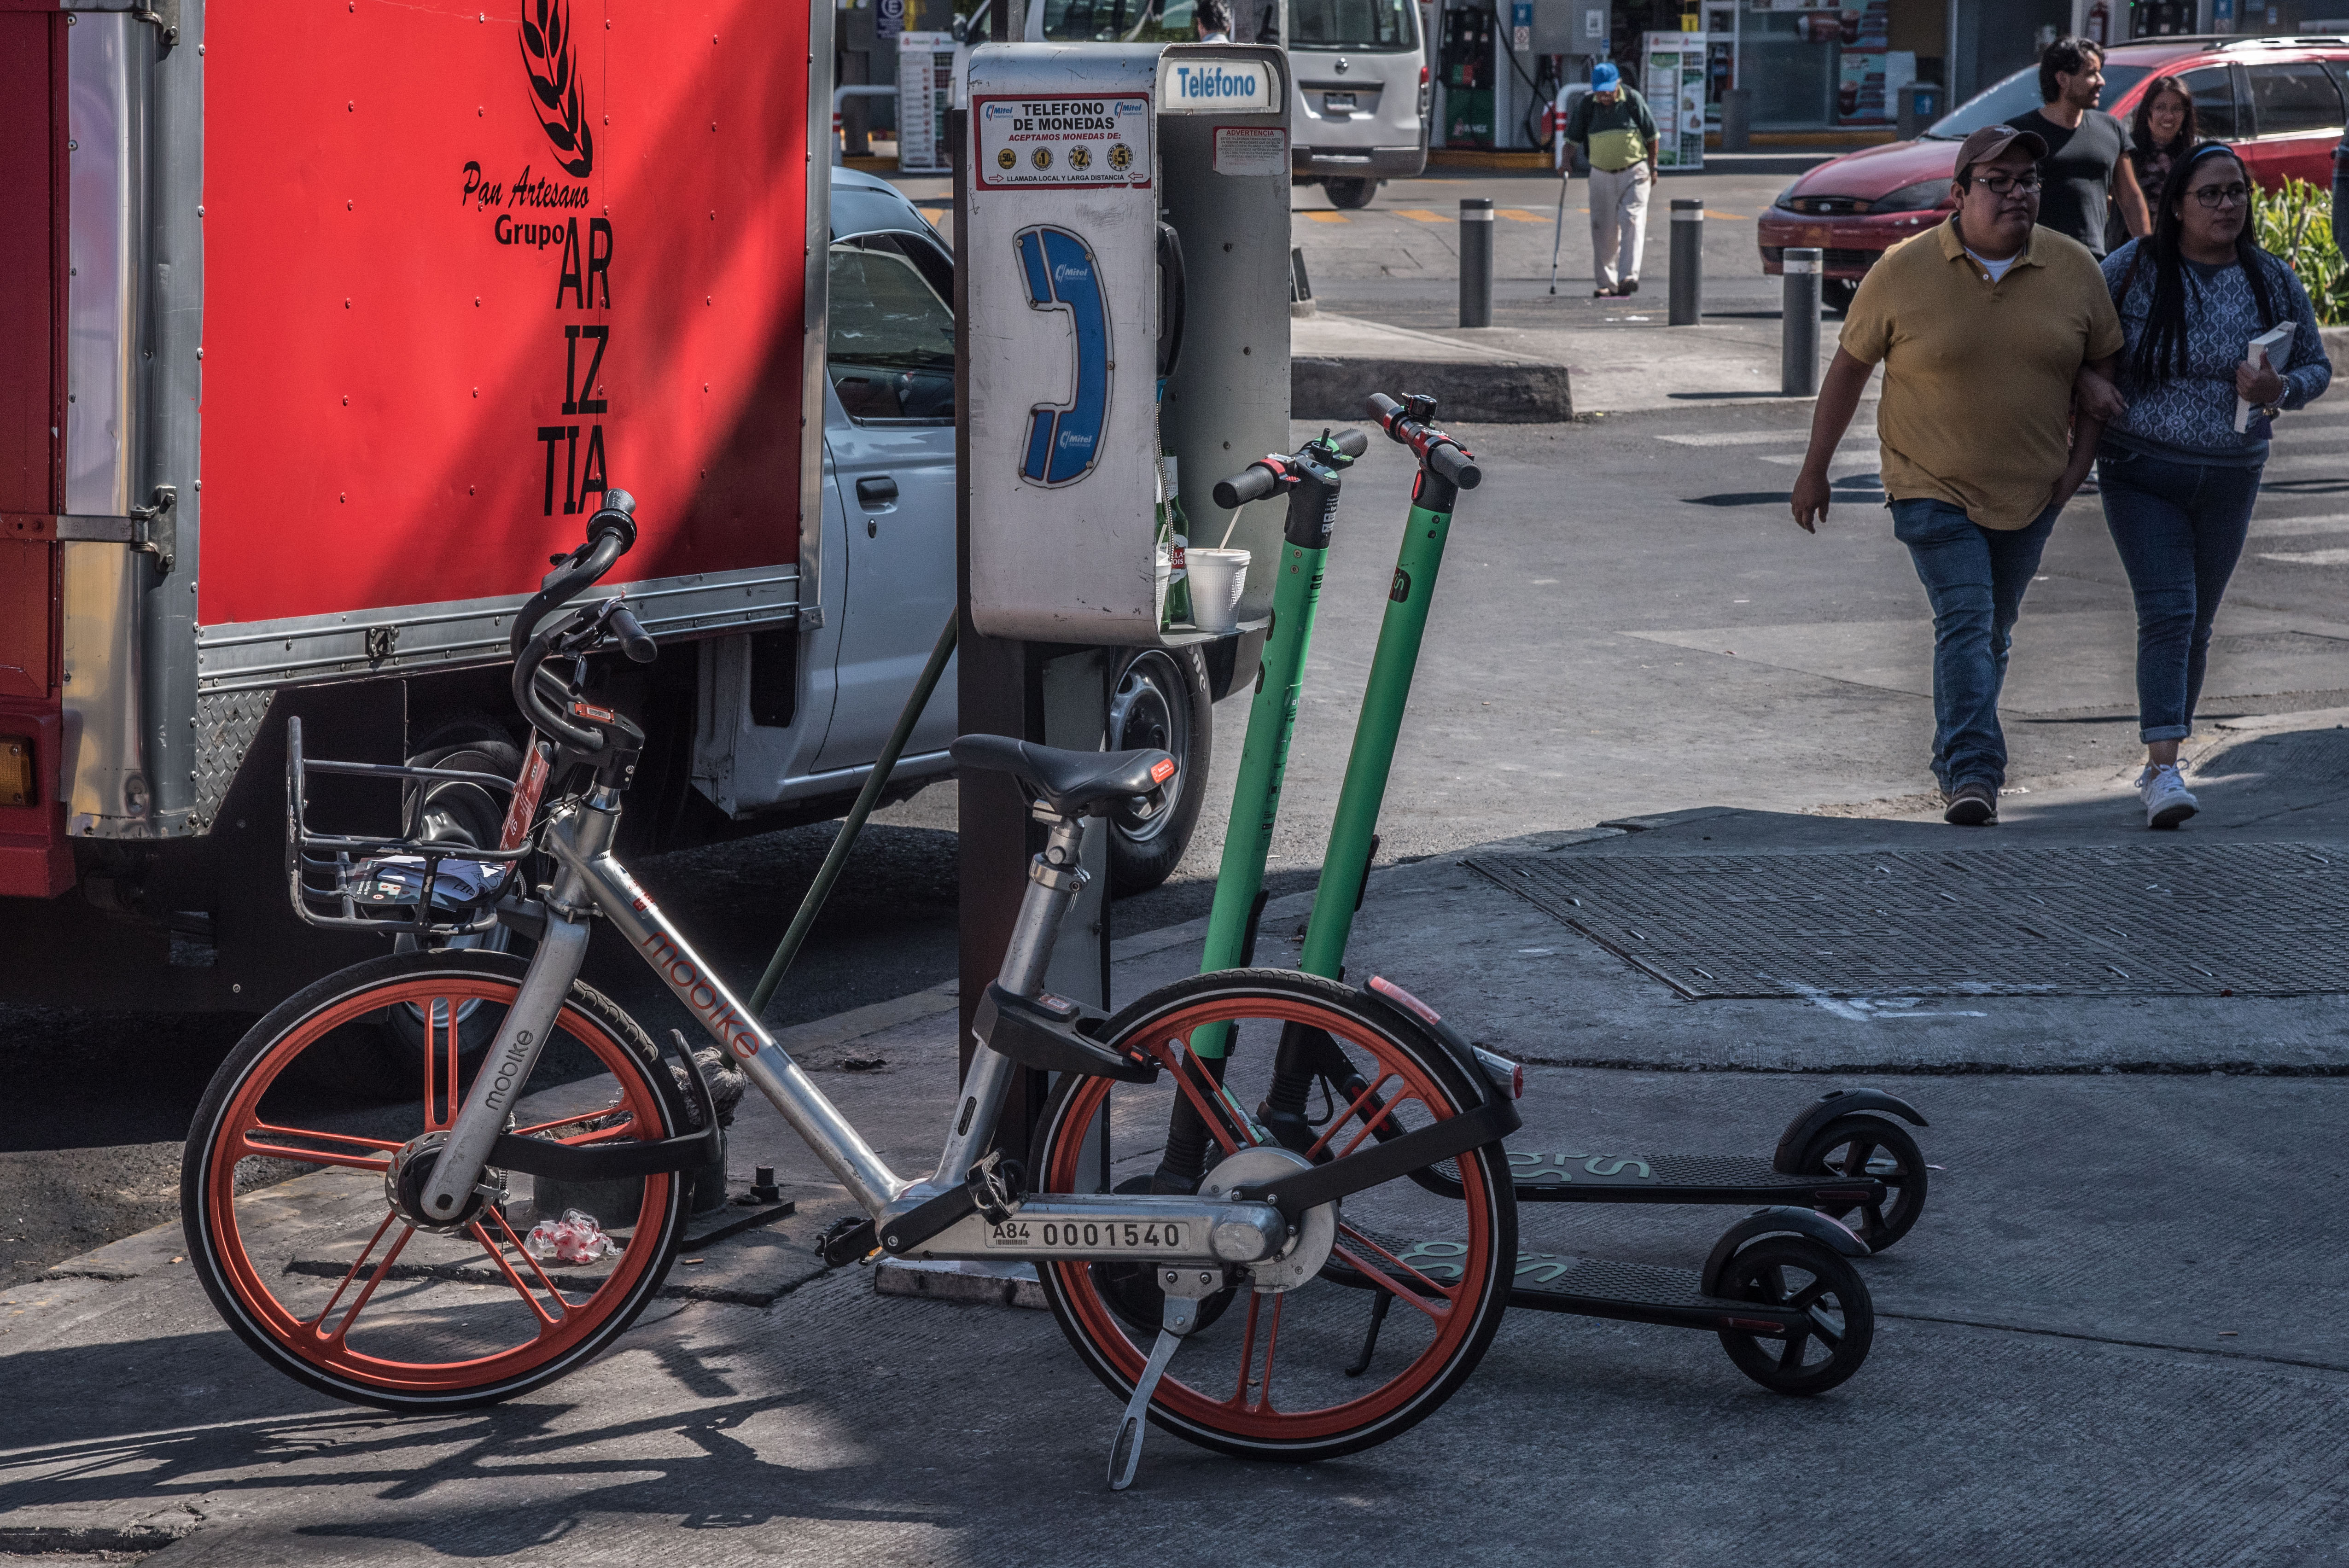 El servicio de préstamo de bicicletas y patines “scooters” han generado descontento en algunos sectores debido a la obstrucción en las vías públicas (FOTO: CUARTOSCURO)